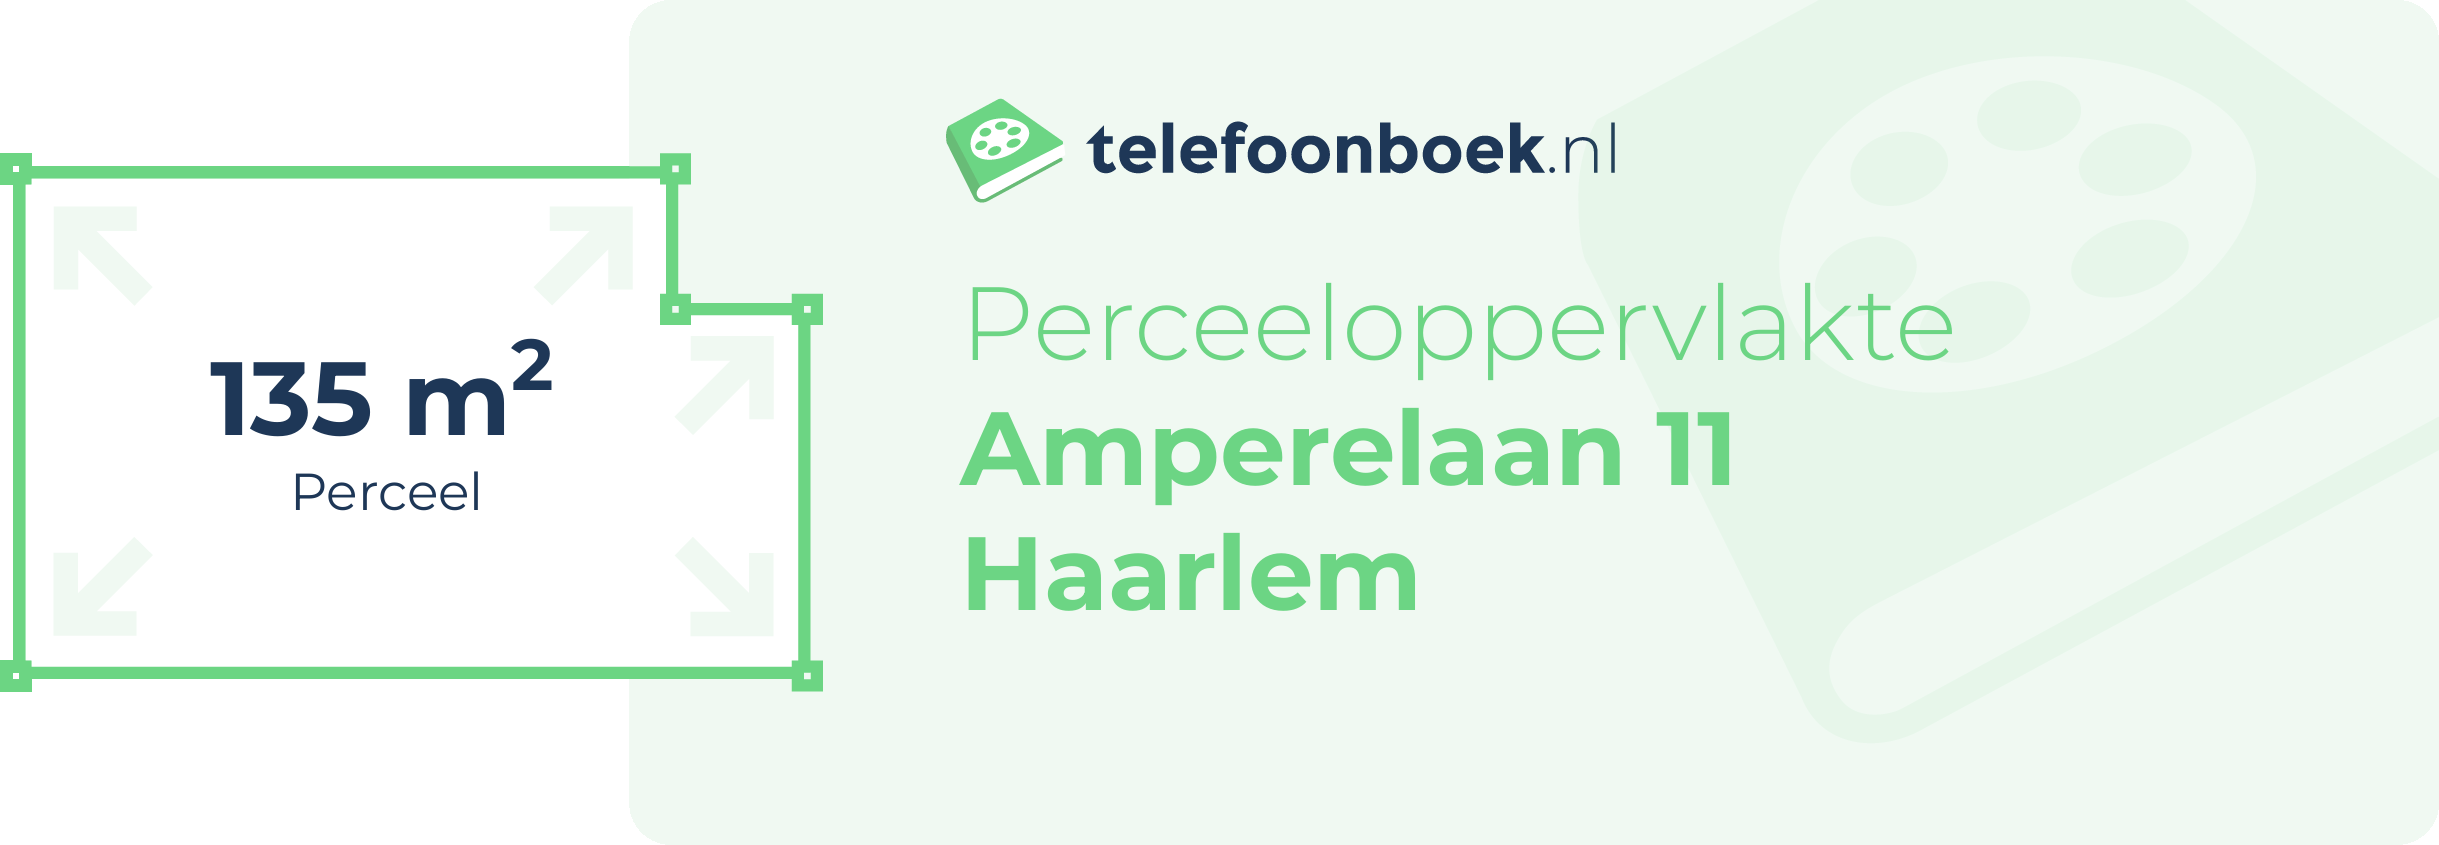 Perceeloppervlakte Amperelaan 11 Haarlem